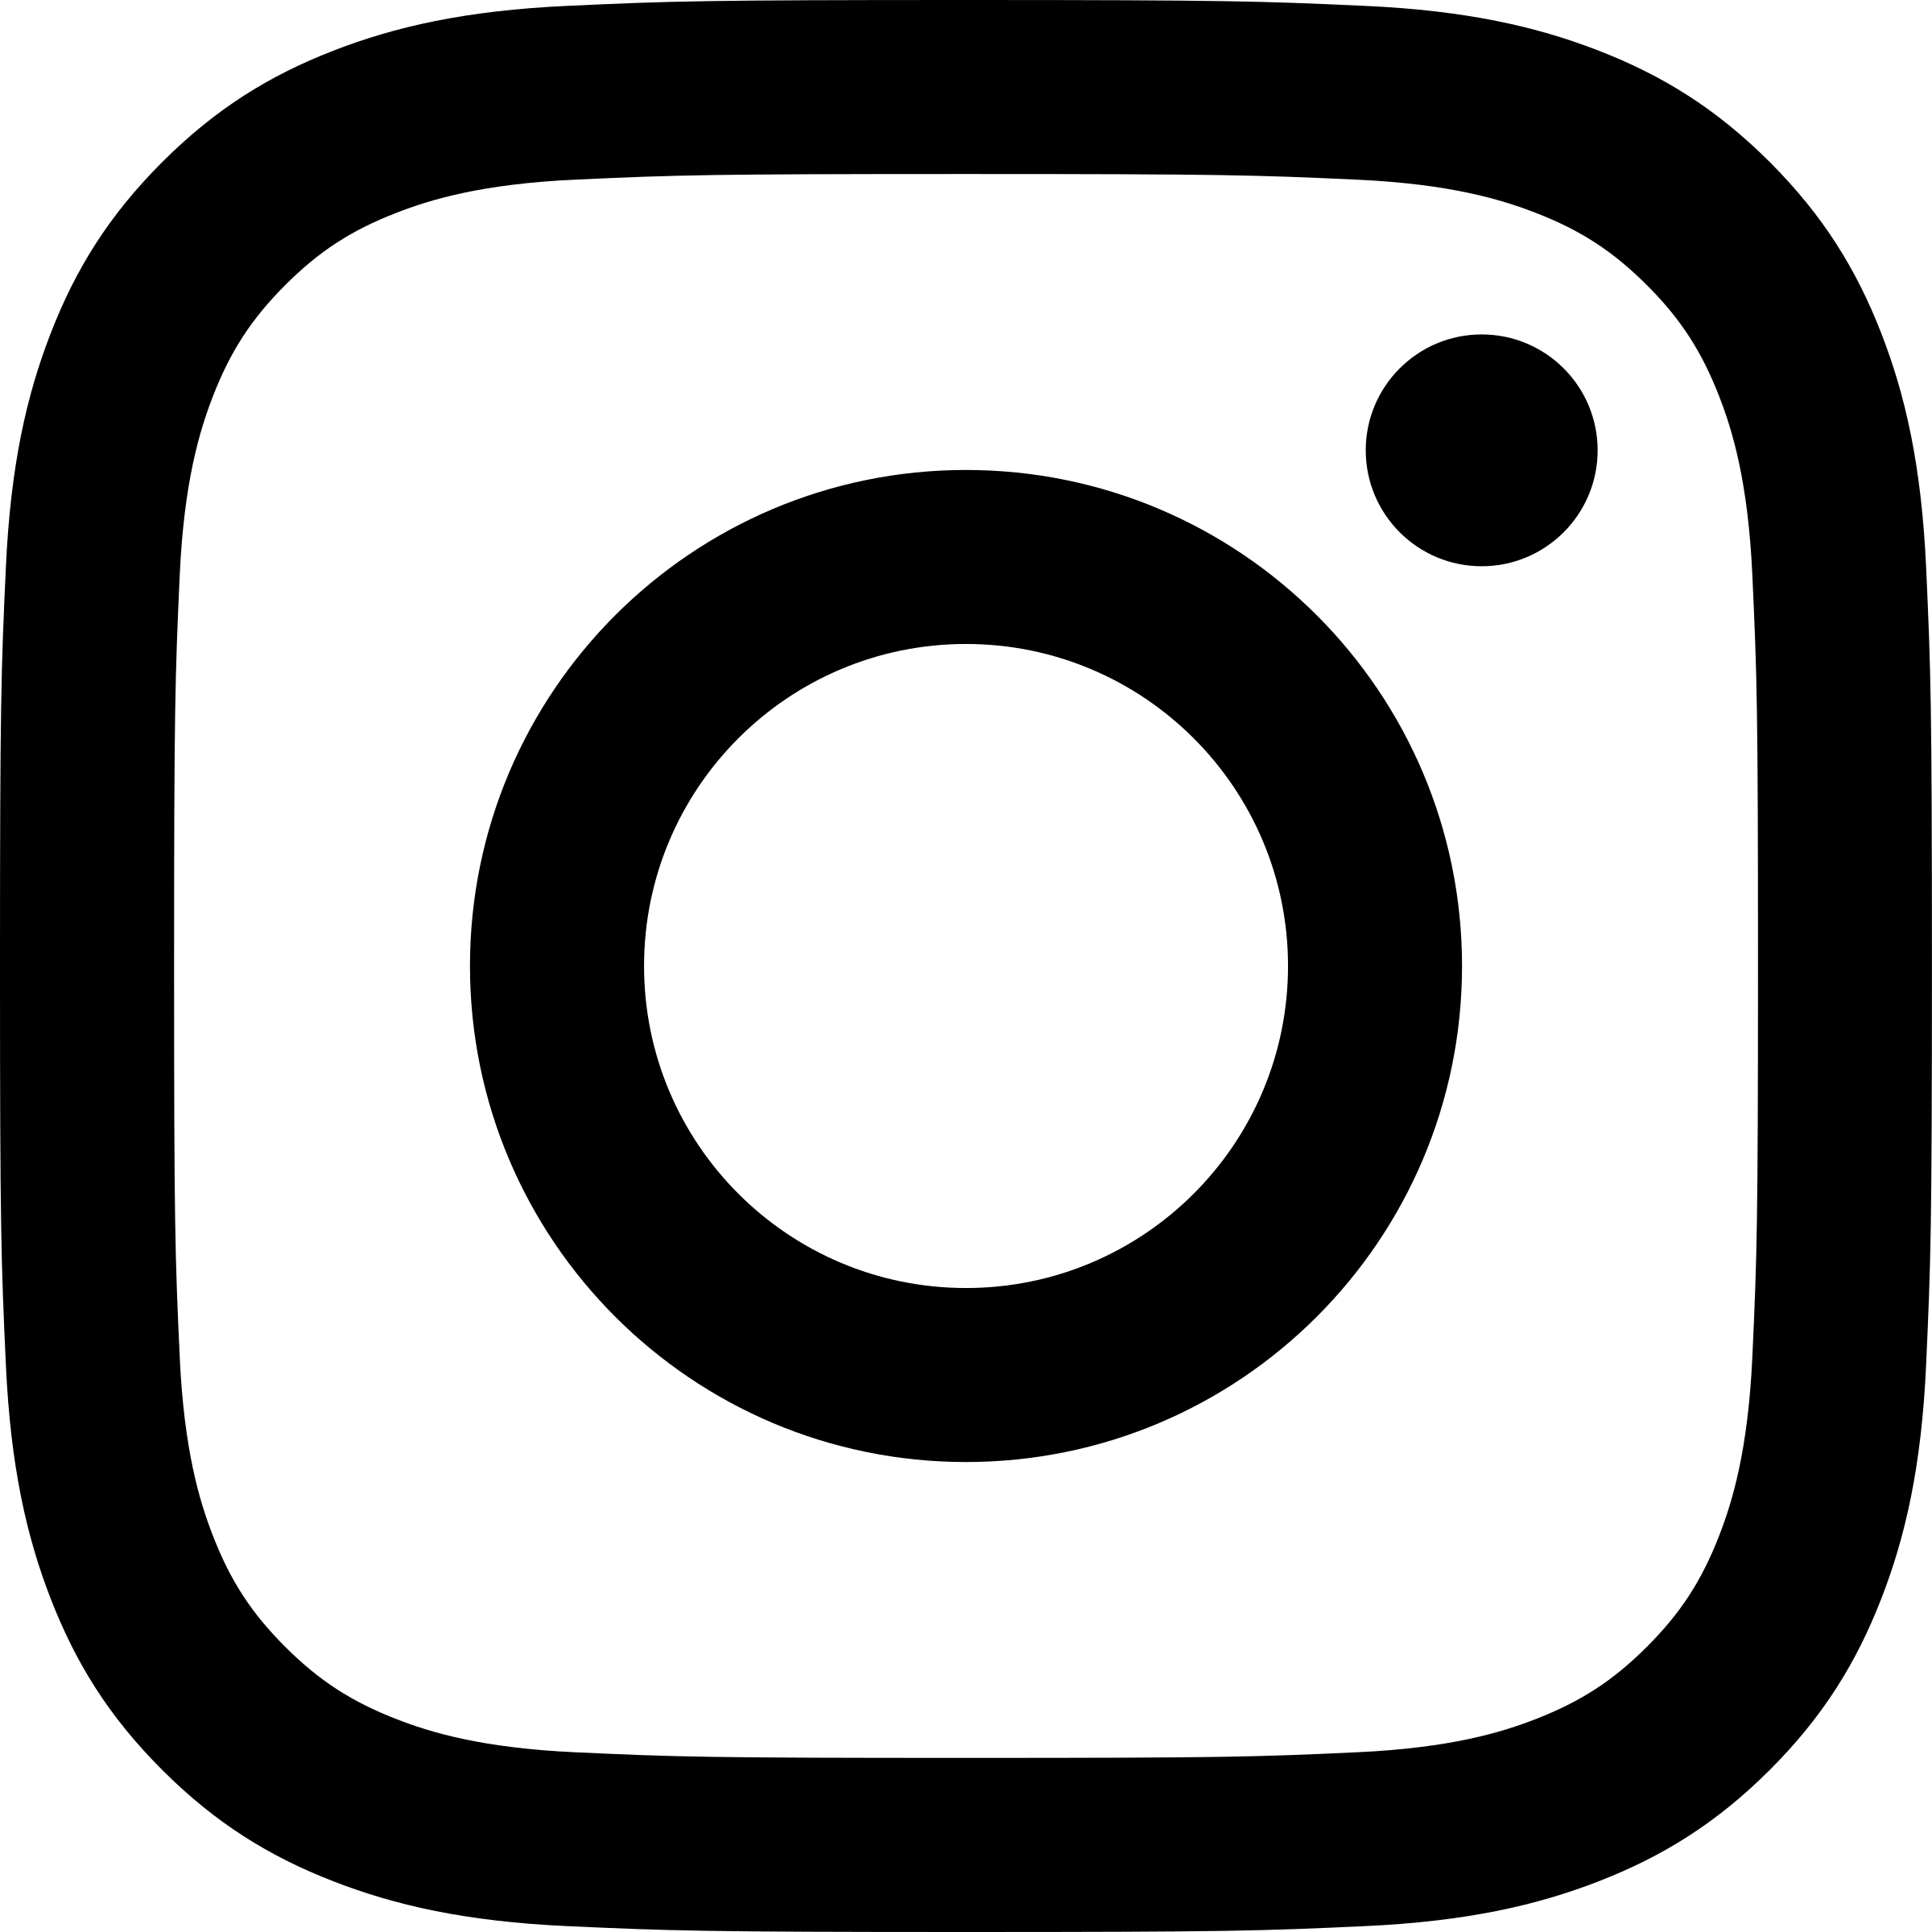 Large Instagram Logo - Instagram Glyph 1 Logo SVG Vector & PNG Transparent - Vector Logo Supply